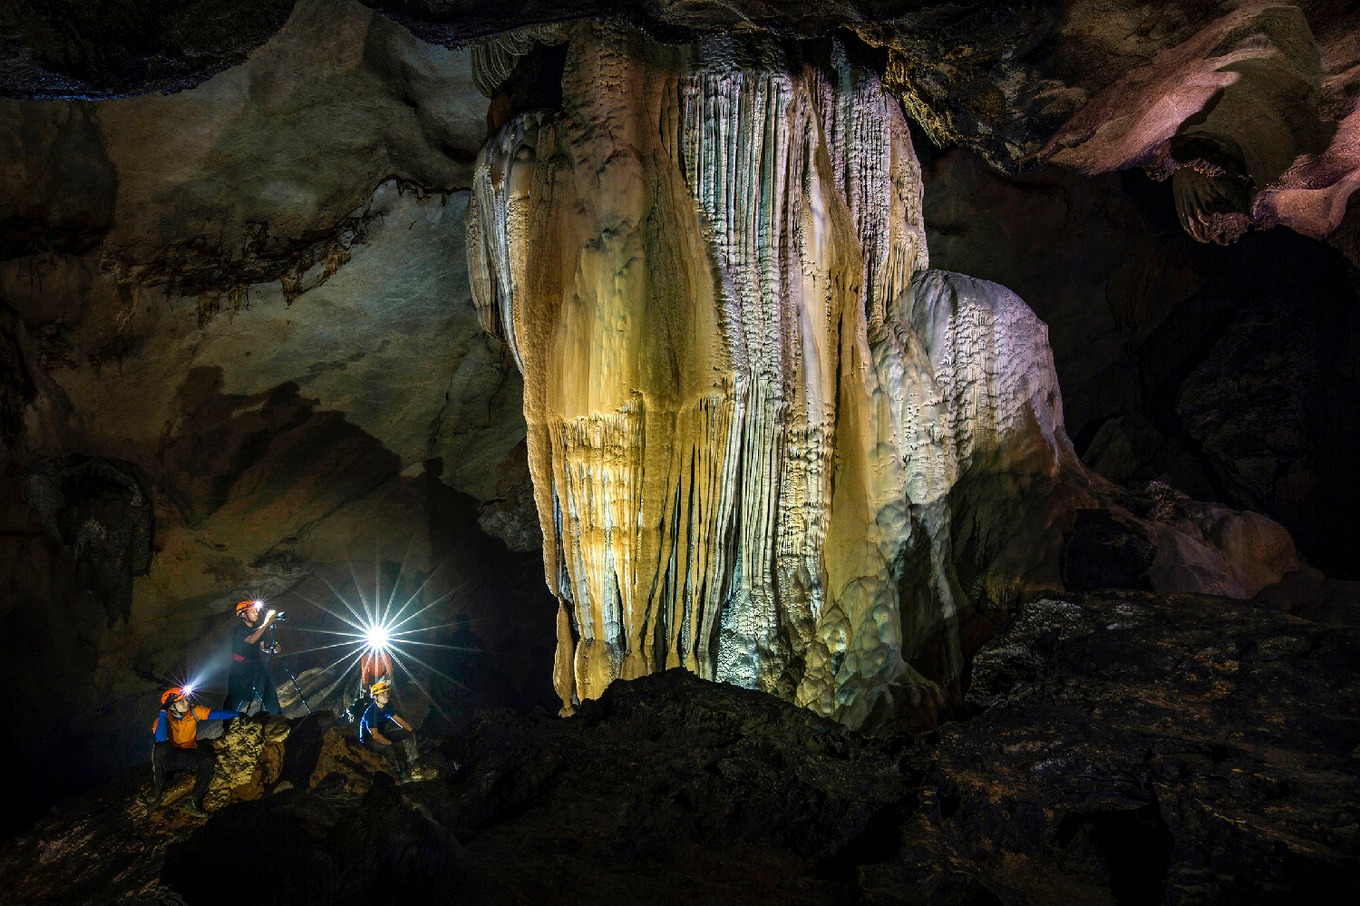 Chiêm ngưỡng đường hầm tình yêu trong hang động đẹp nhất nhì đất Việt6